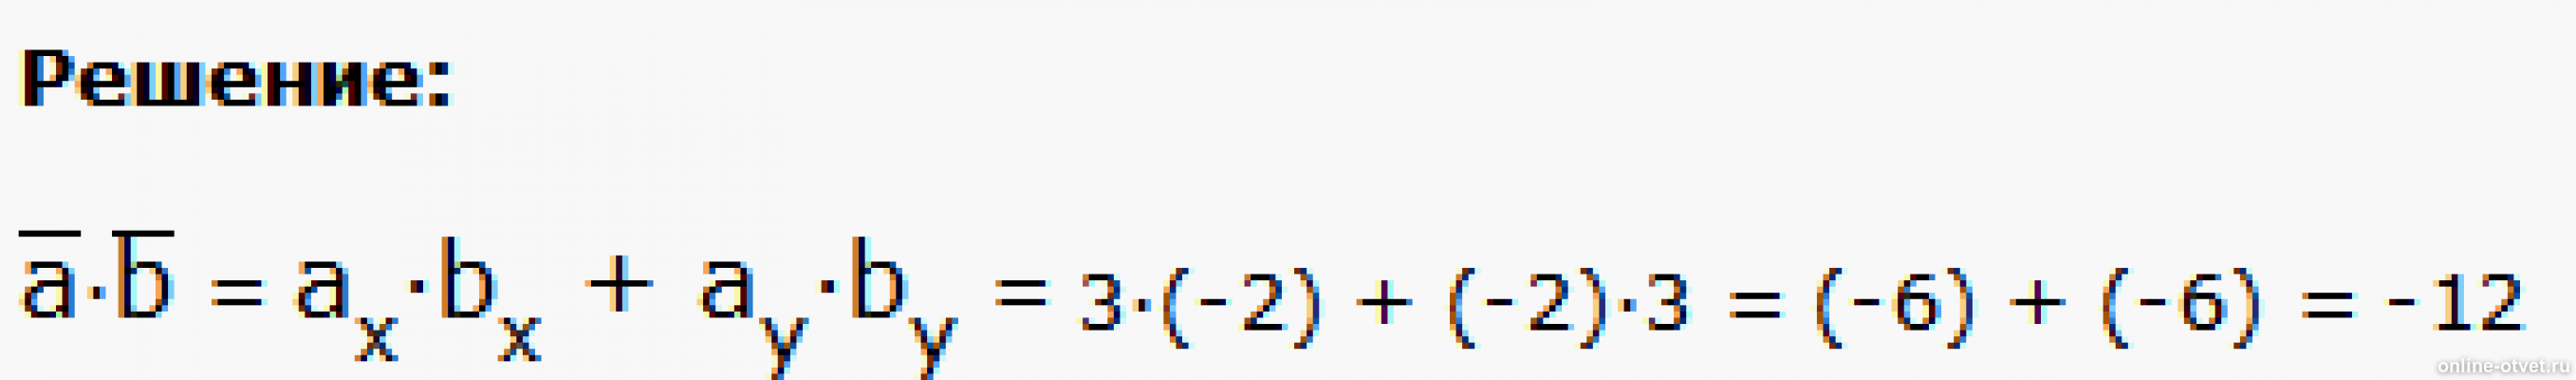 Скалярное произведение векторов a 2b. Вектор m a+2b-c n 2a-b. Скалярное произведение векторов m и n. Вычислите скалярное произведение векторов m и n. Вычислите скалярное произведение векторов m и n если m 3 -2 n -2 3.